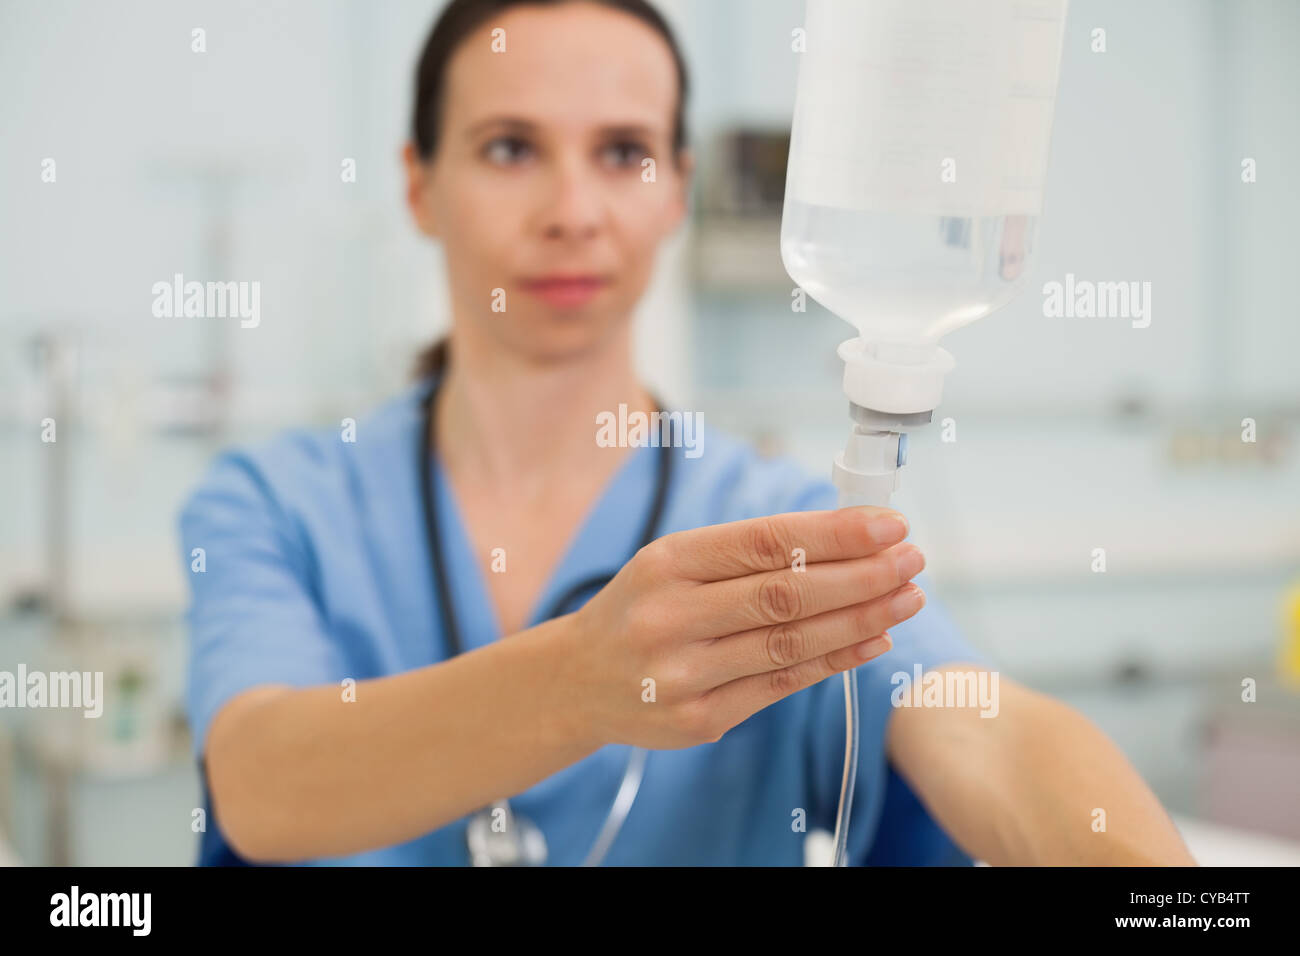 Nurse adjusting drip Stock Photo